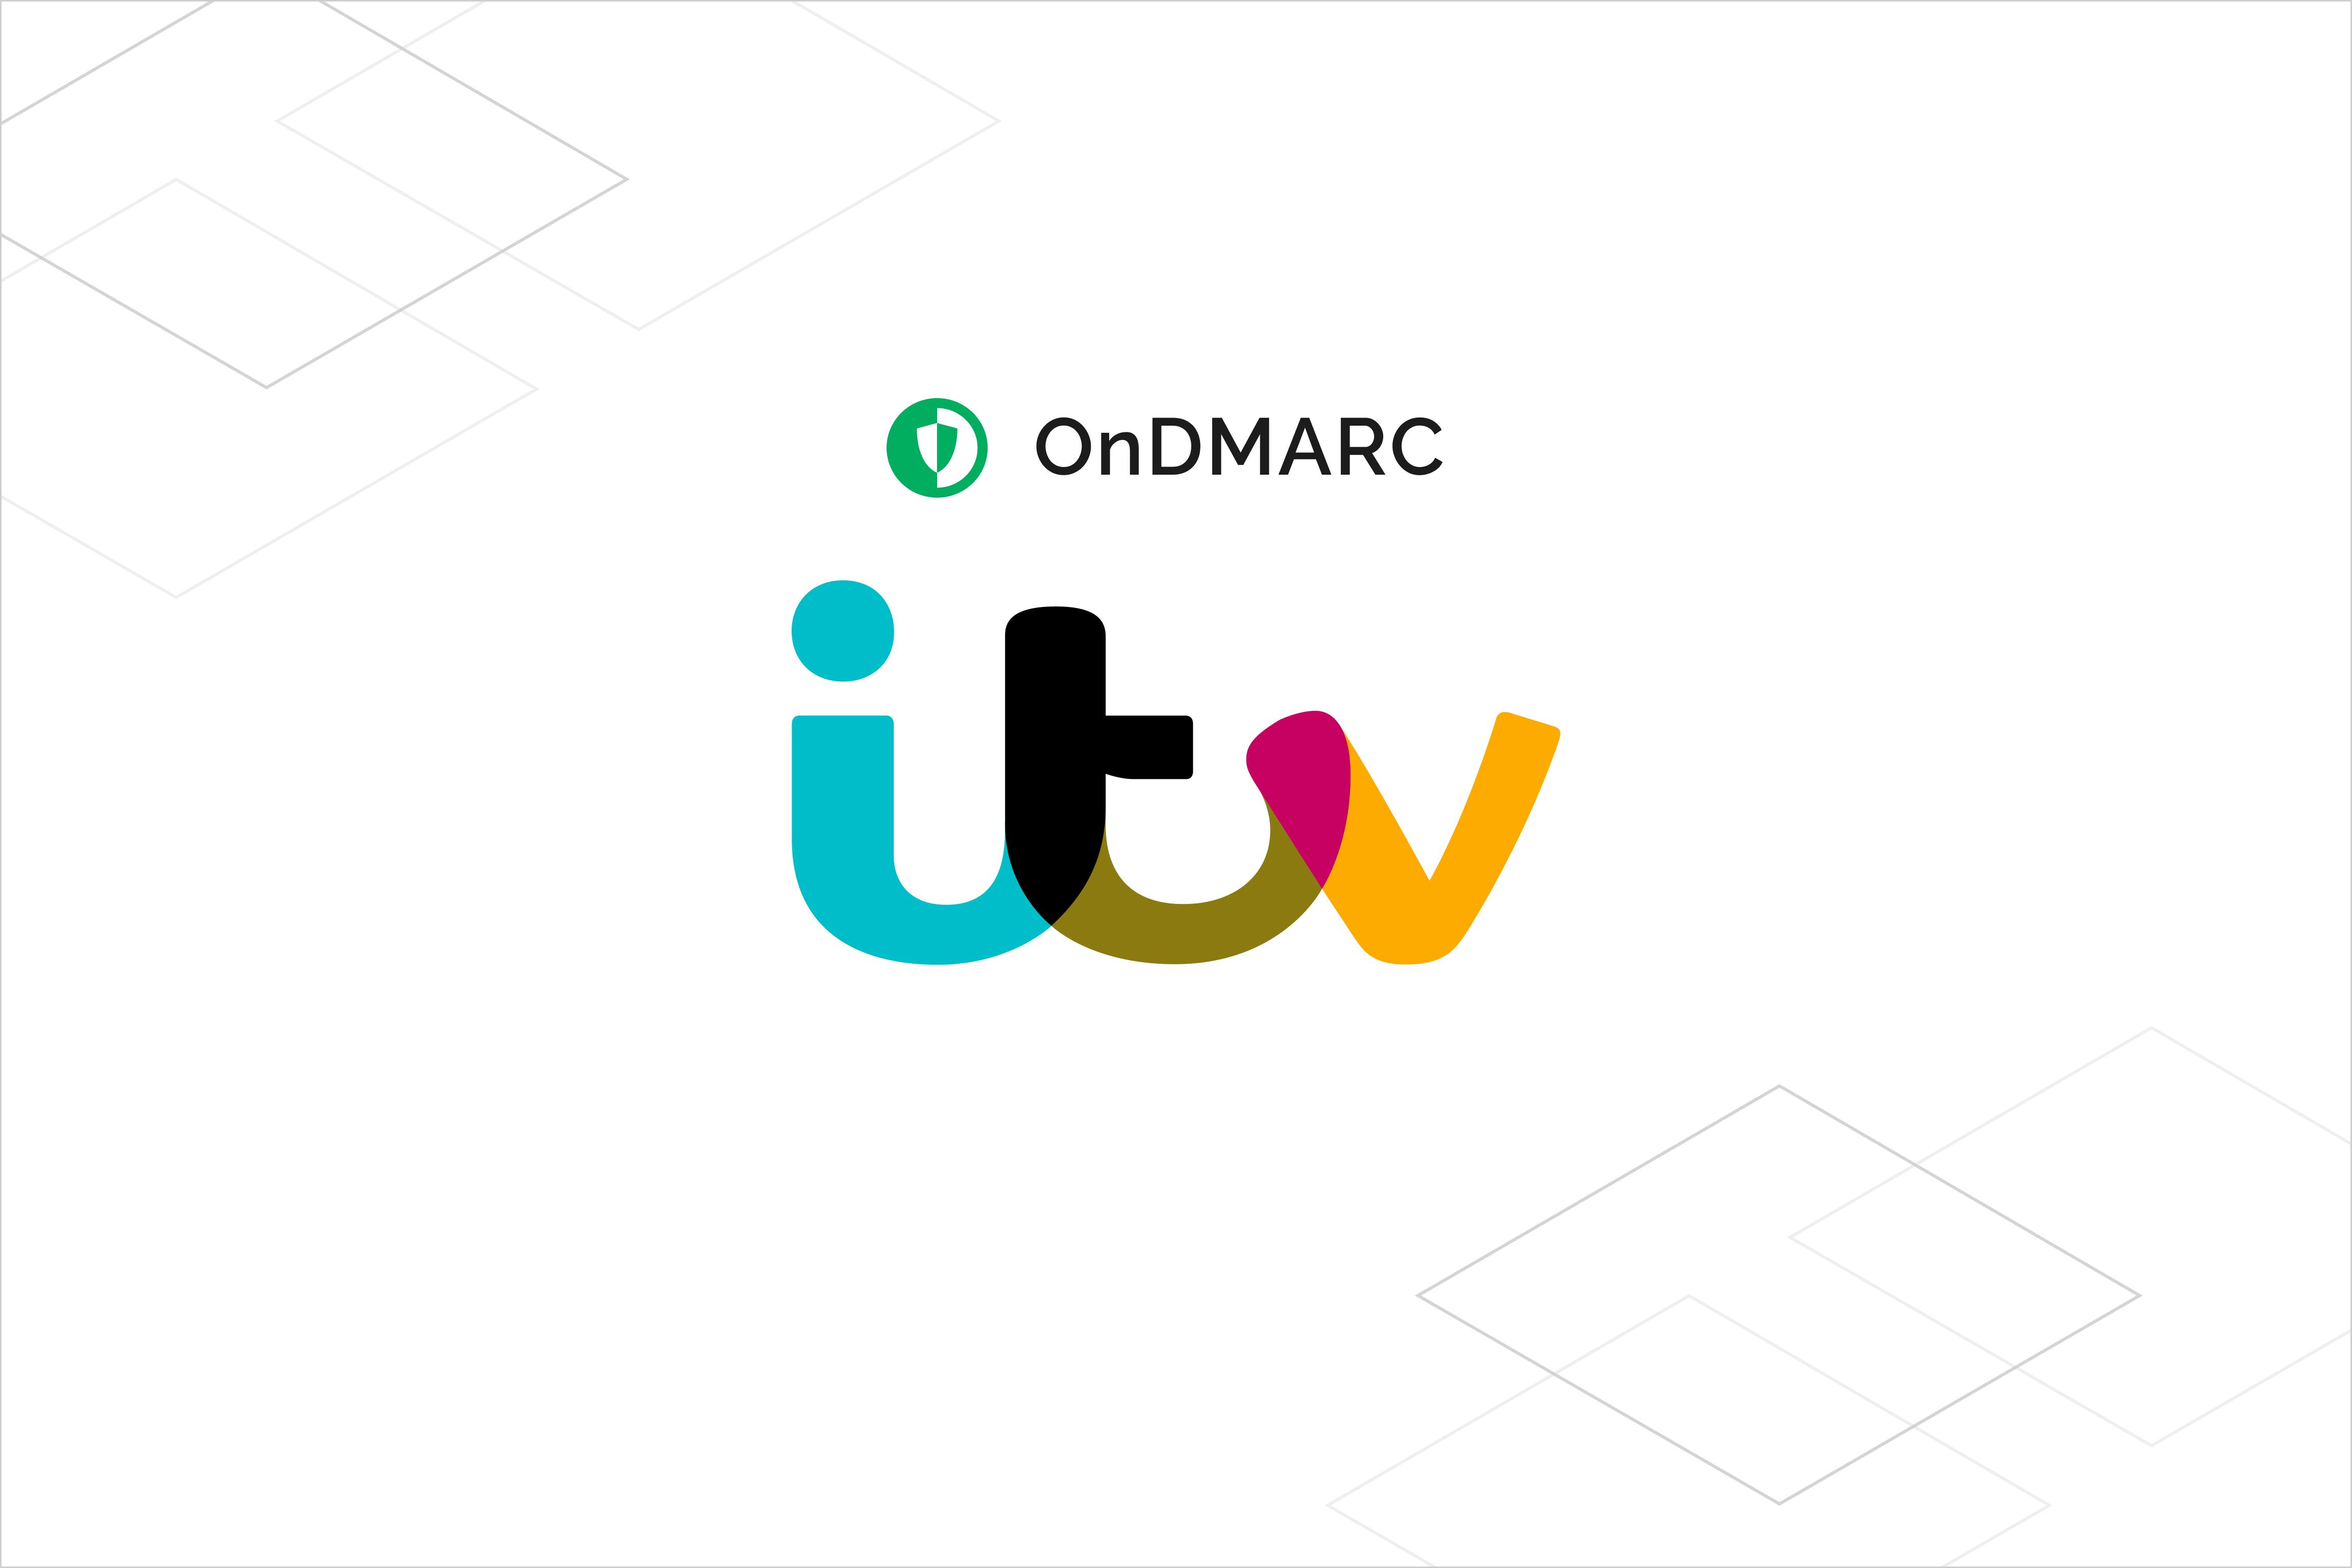  OnDMARC and ITV